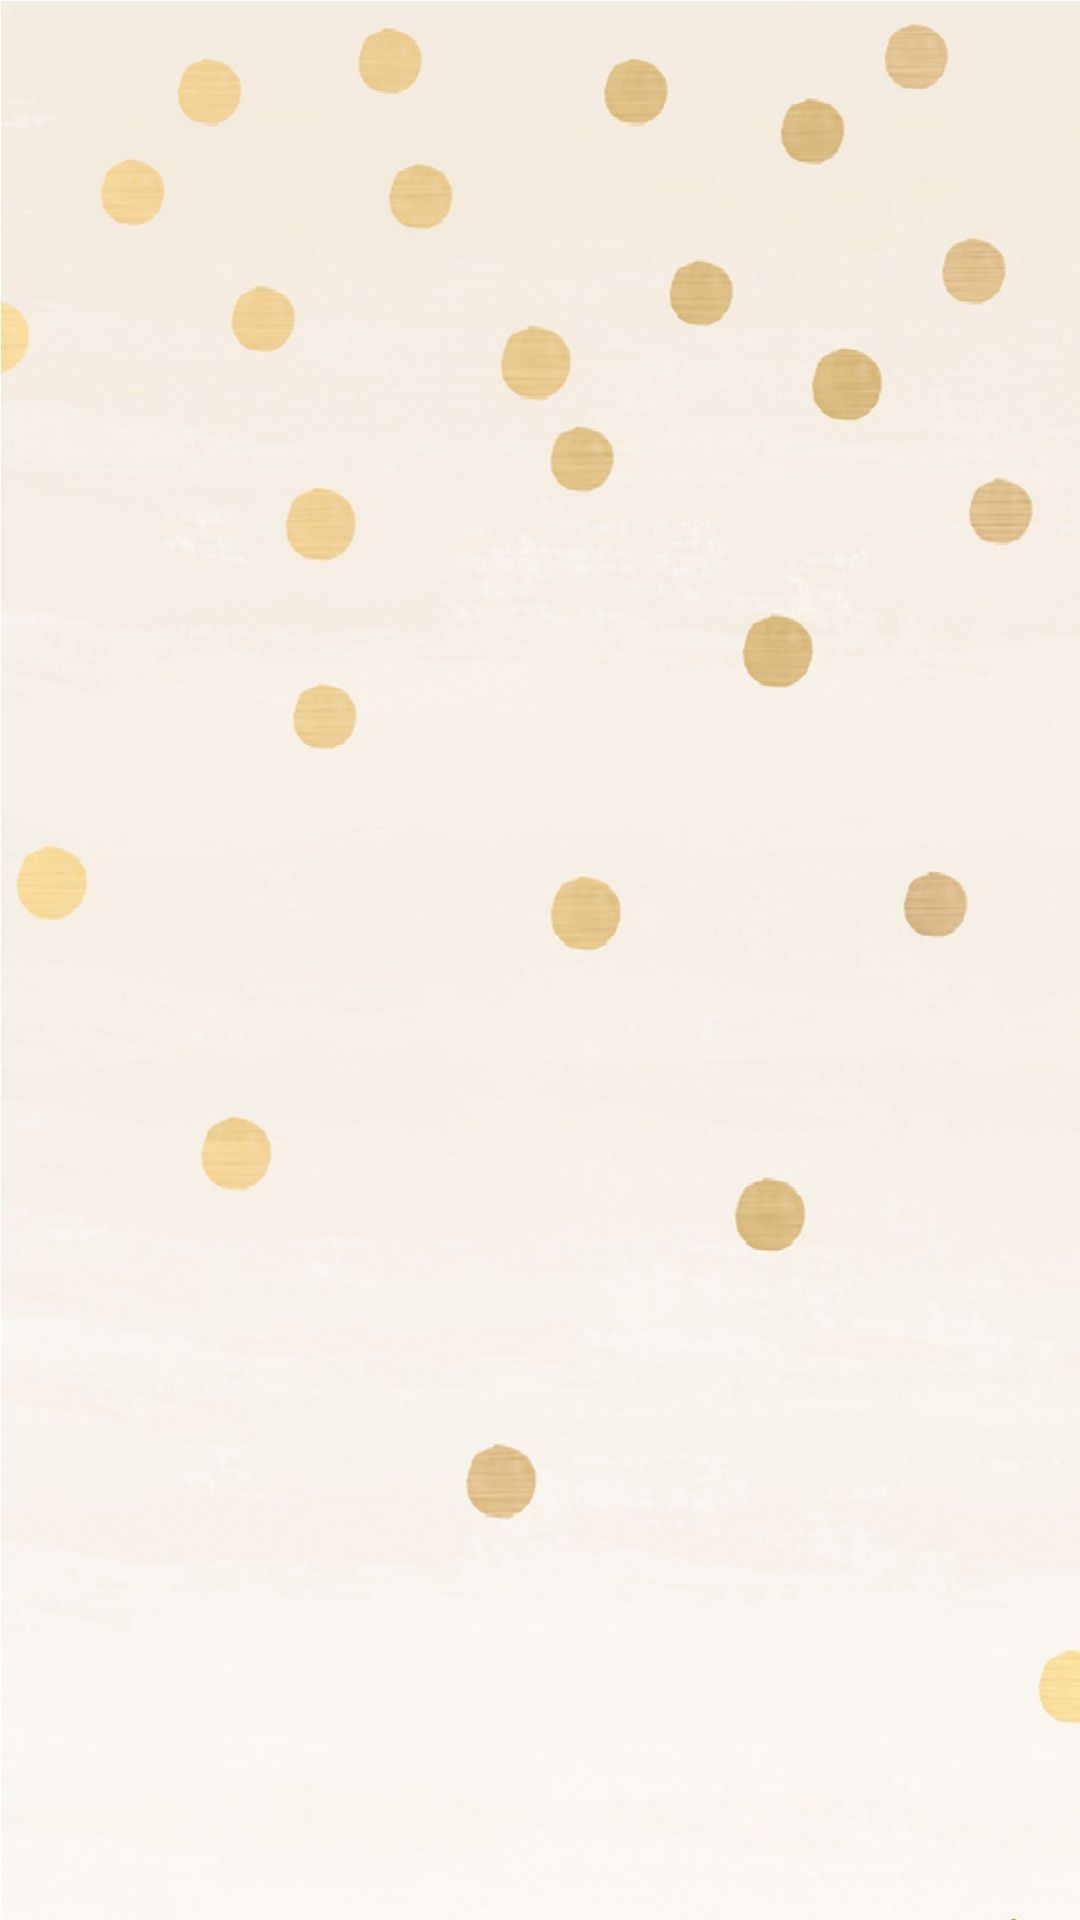 Rose Gold Louis Vuitton IPhone Wallpaper. SEMA Data Co Op